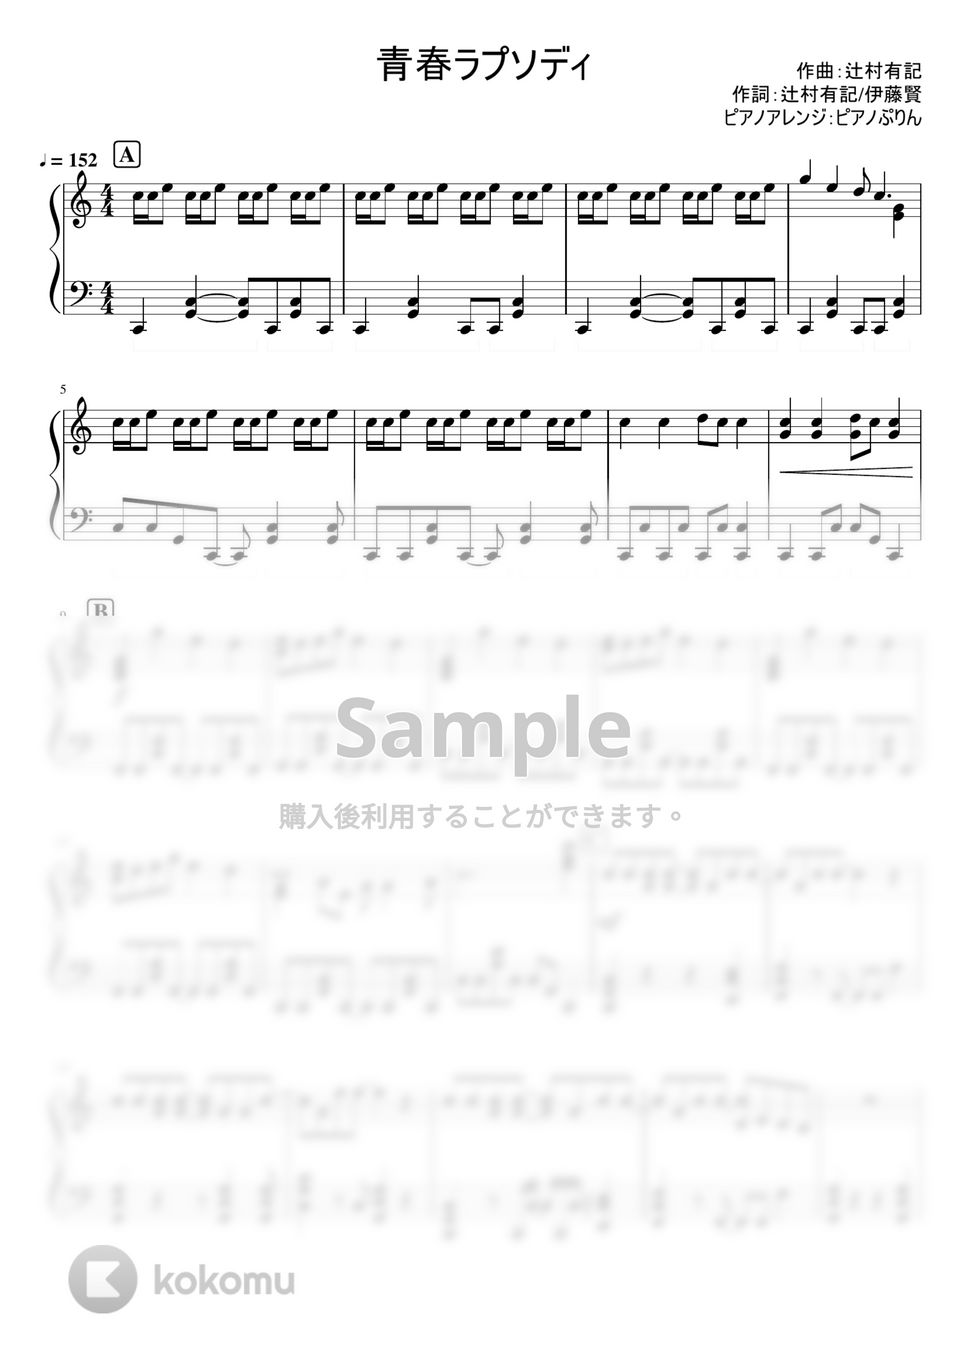 なにわ男子 - 青春ラプソディ (4th Single「Special Kiss」/(YouTube ver.)) by ピアノぷりん